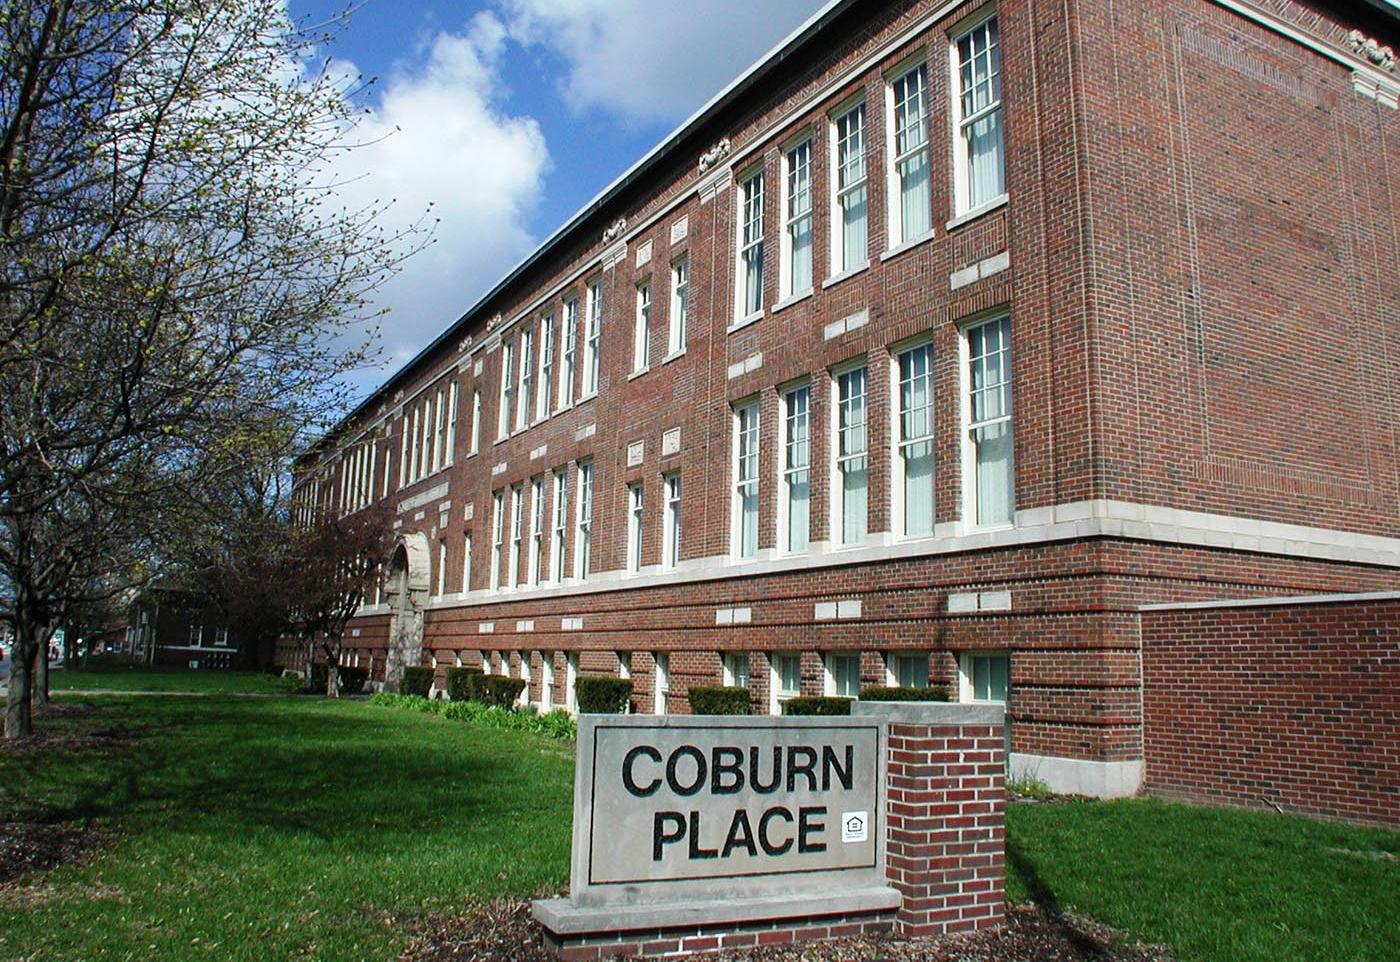 Coburn Place